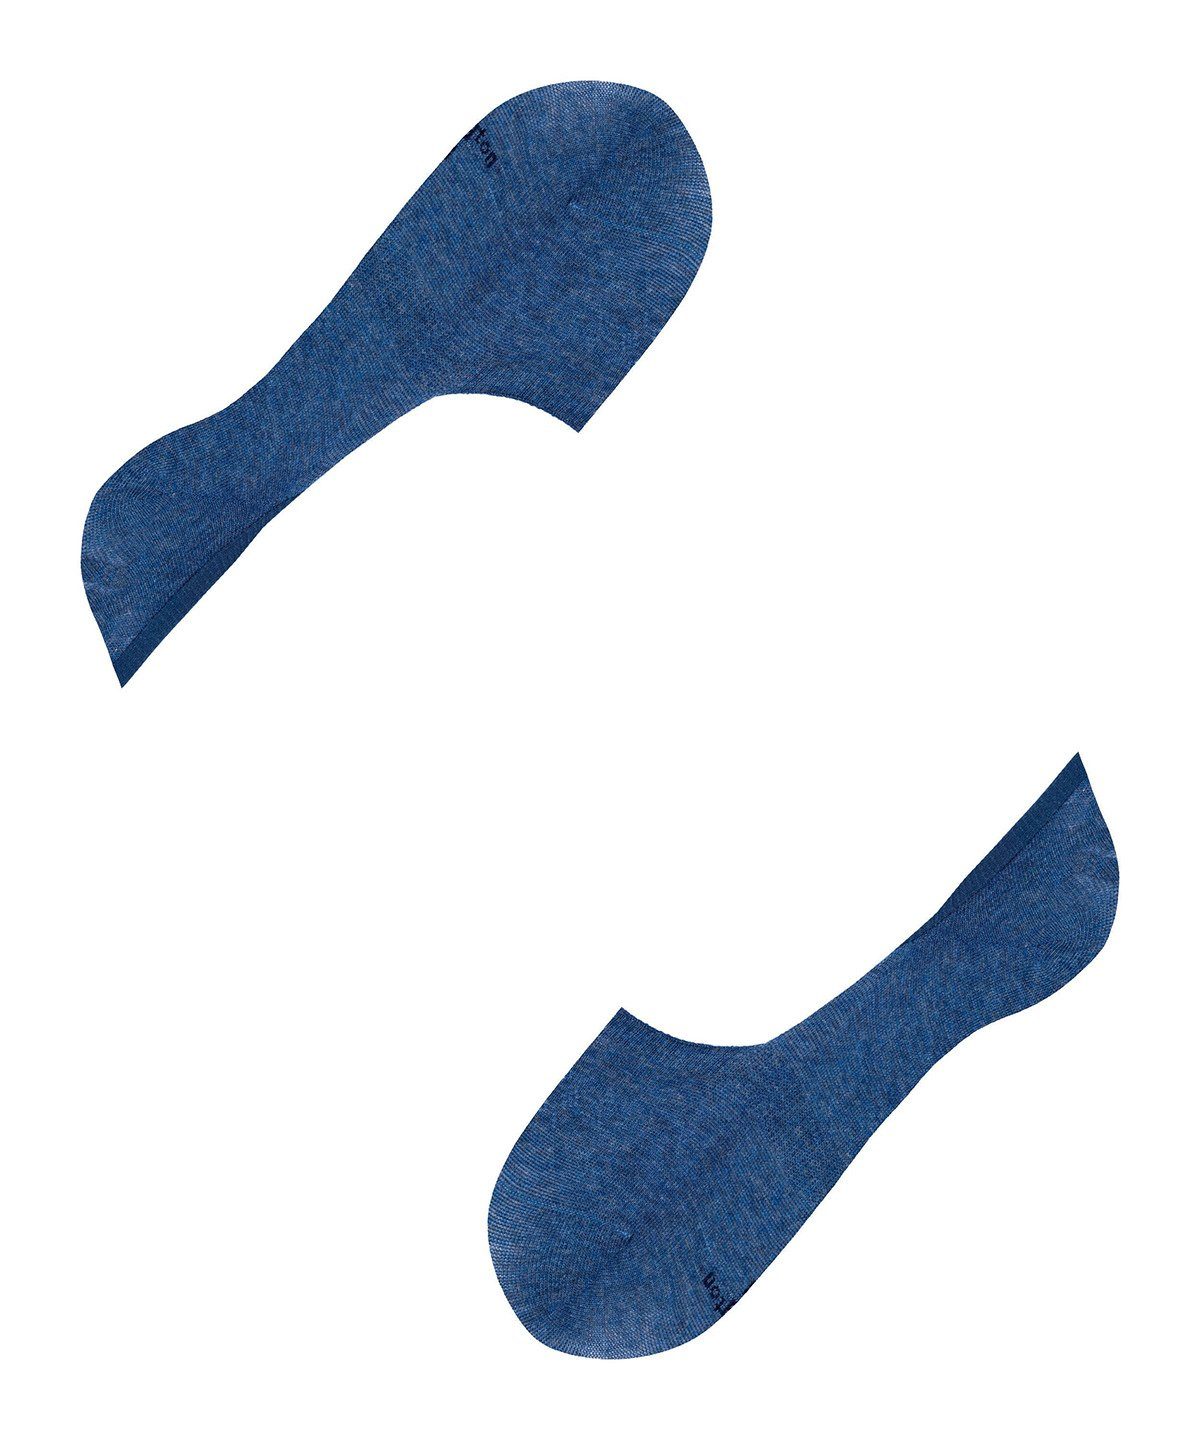 Burlington Füßlinge Damen 2er Pack - Anti Everyday Blau Socken Fuesslinge